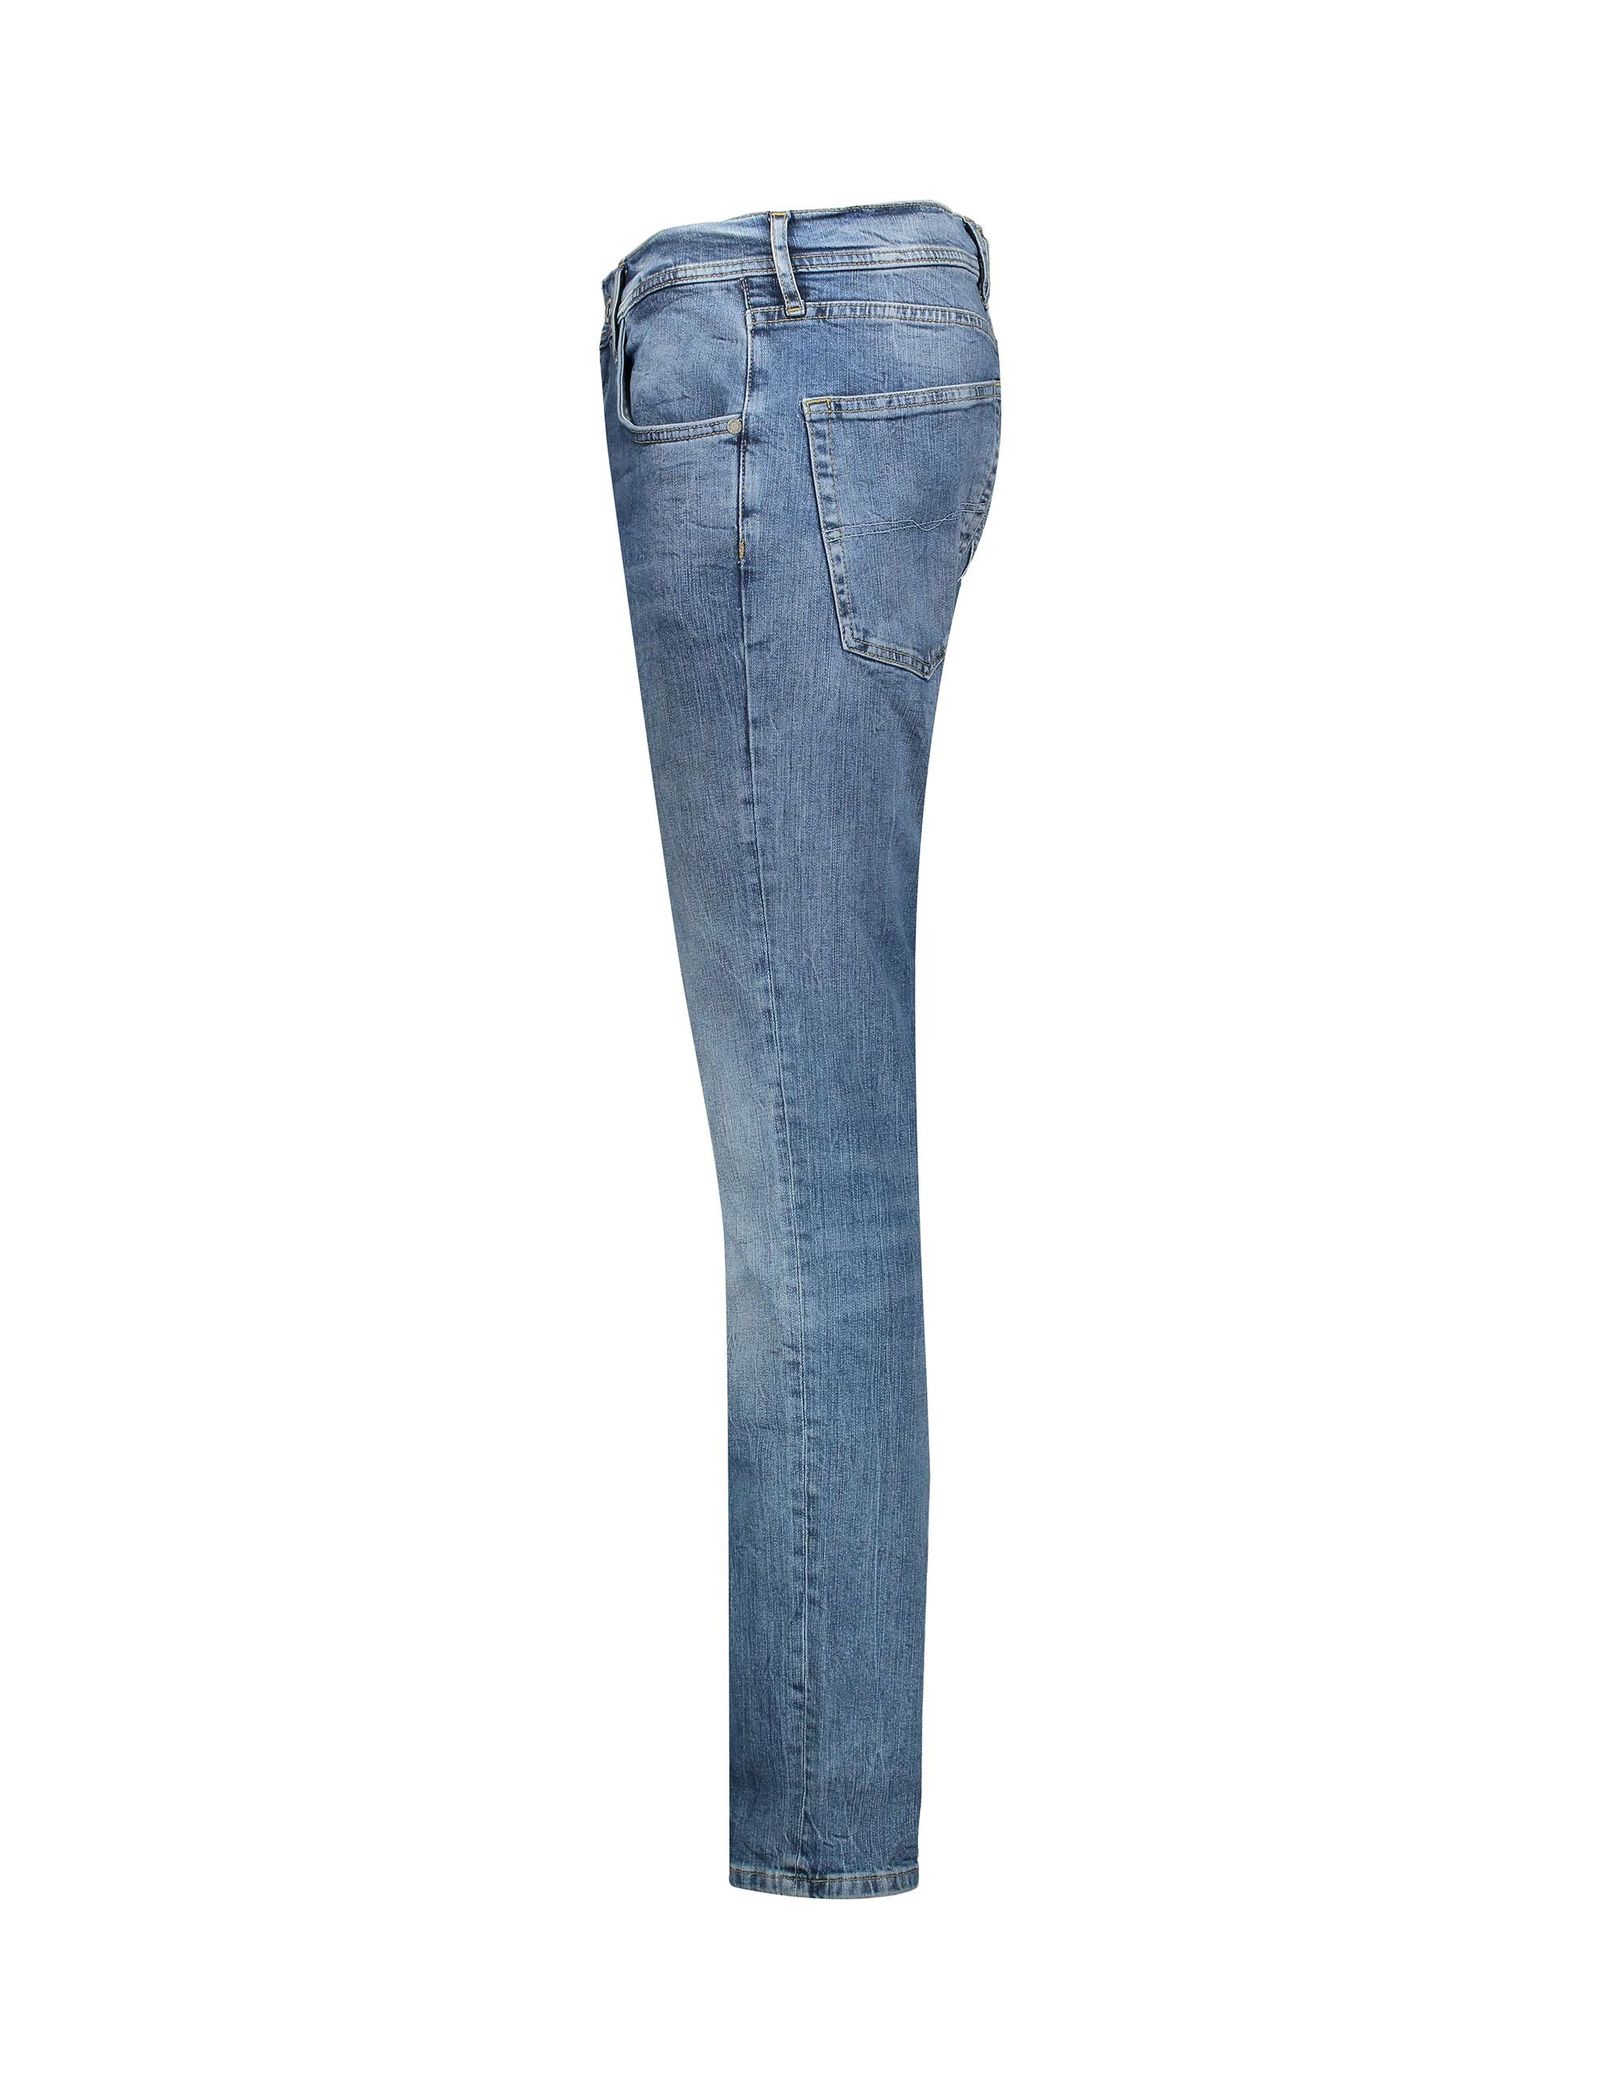 شلوار جین راسته مردانه - پپه جینز - آبي تيره - 4